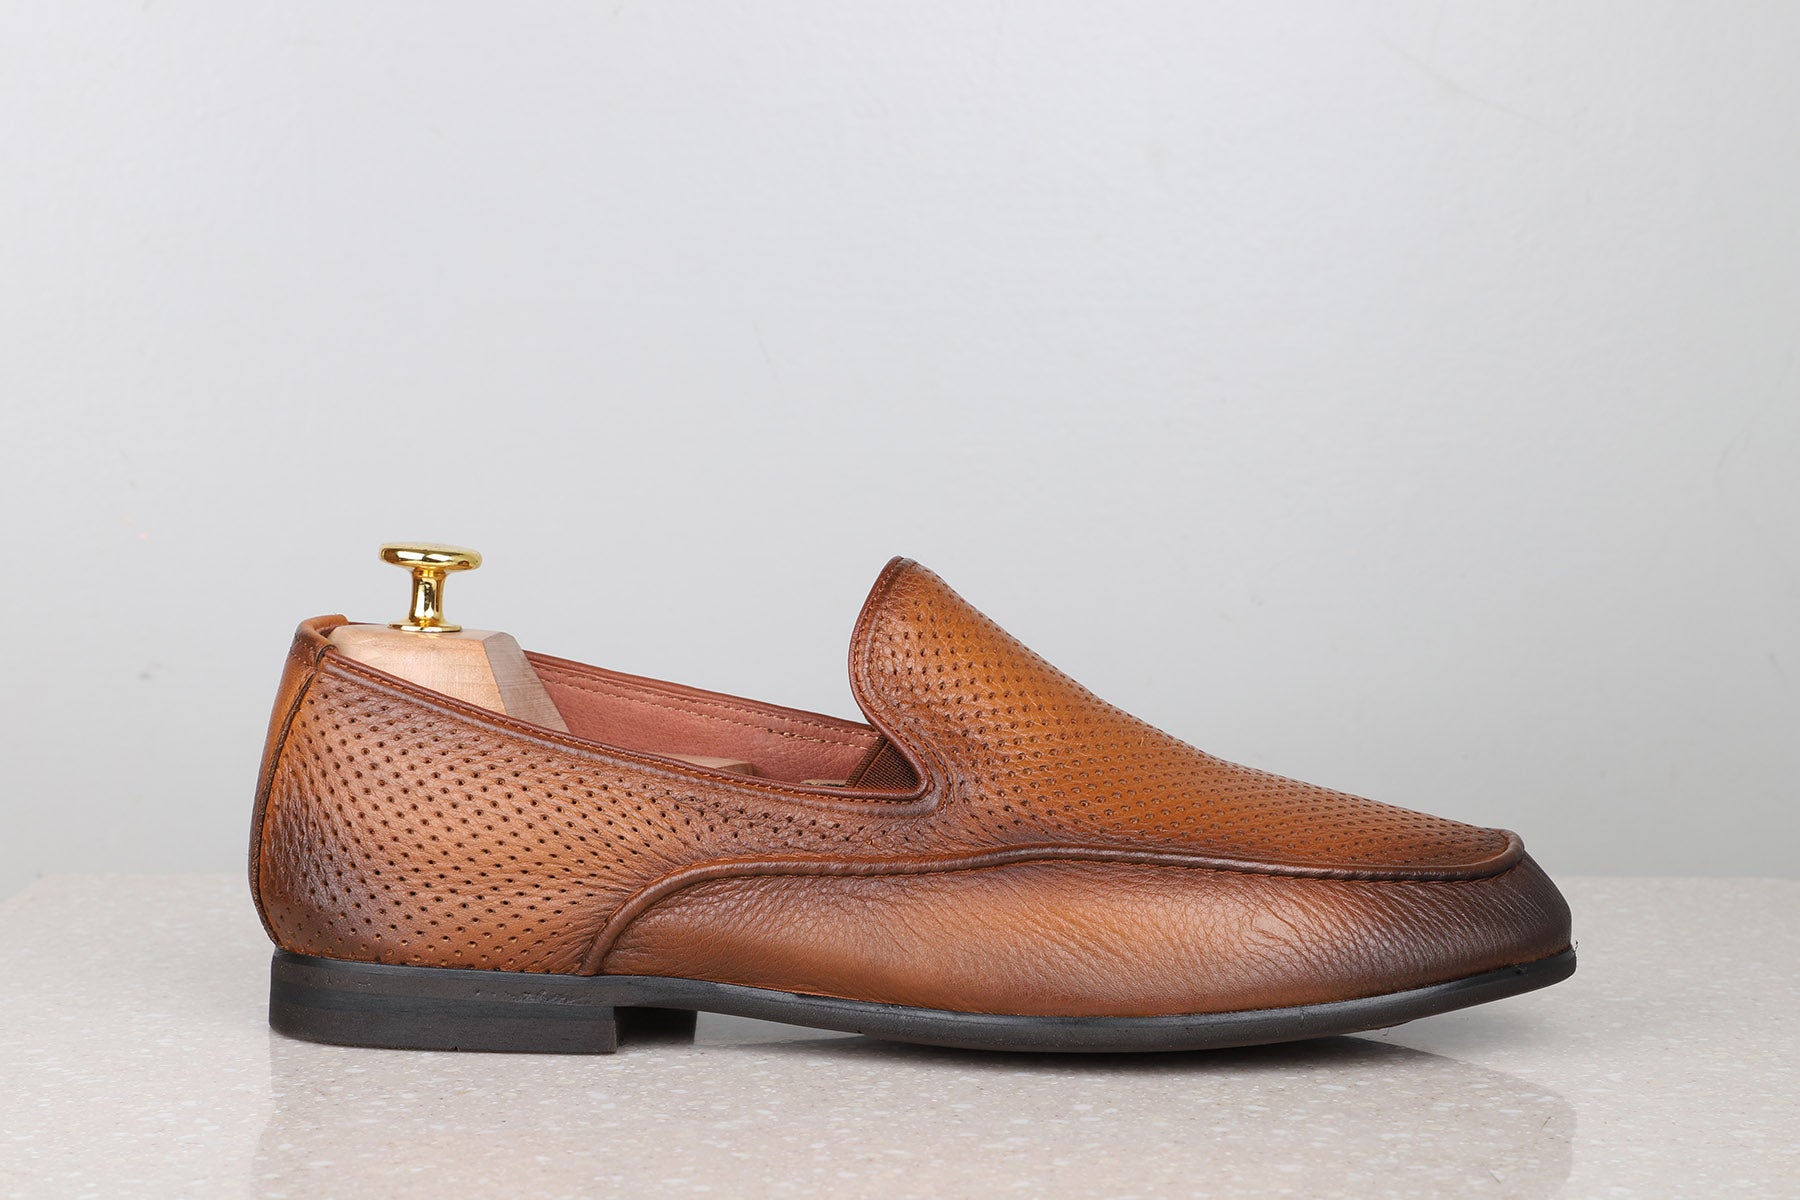 FORMAL SLIPPONS-TAN-Men's Formal Slipons-Inc5 Shoes